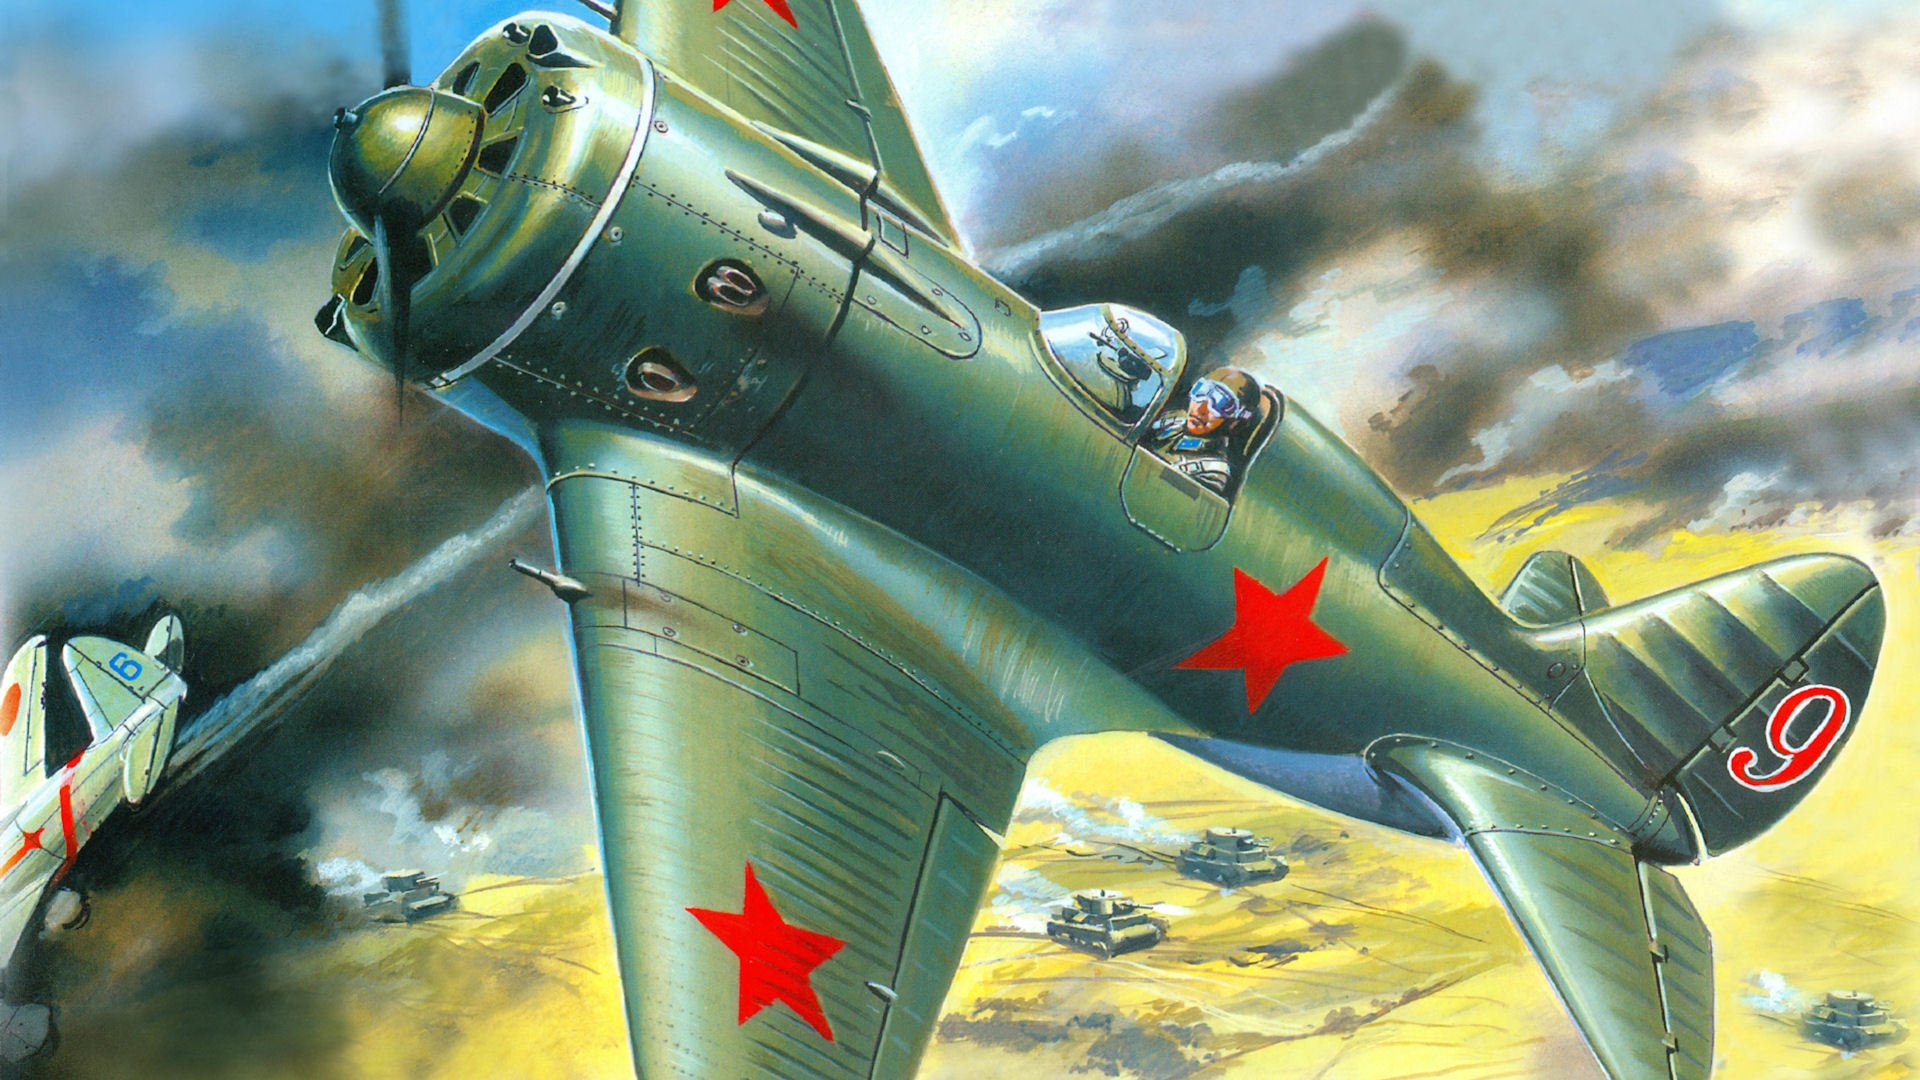 Самолет ссср второй мировой войны рисунки